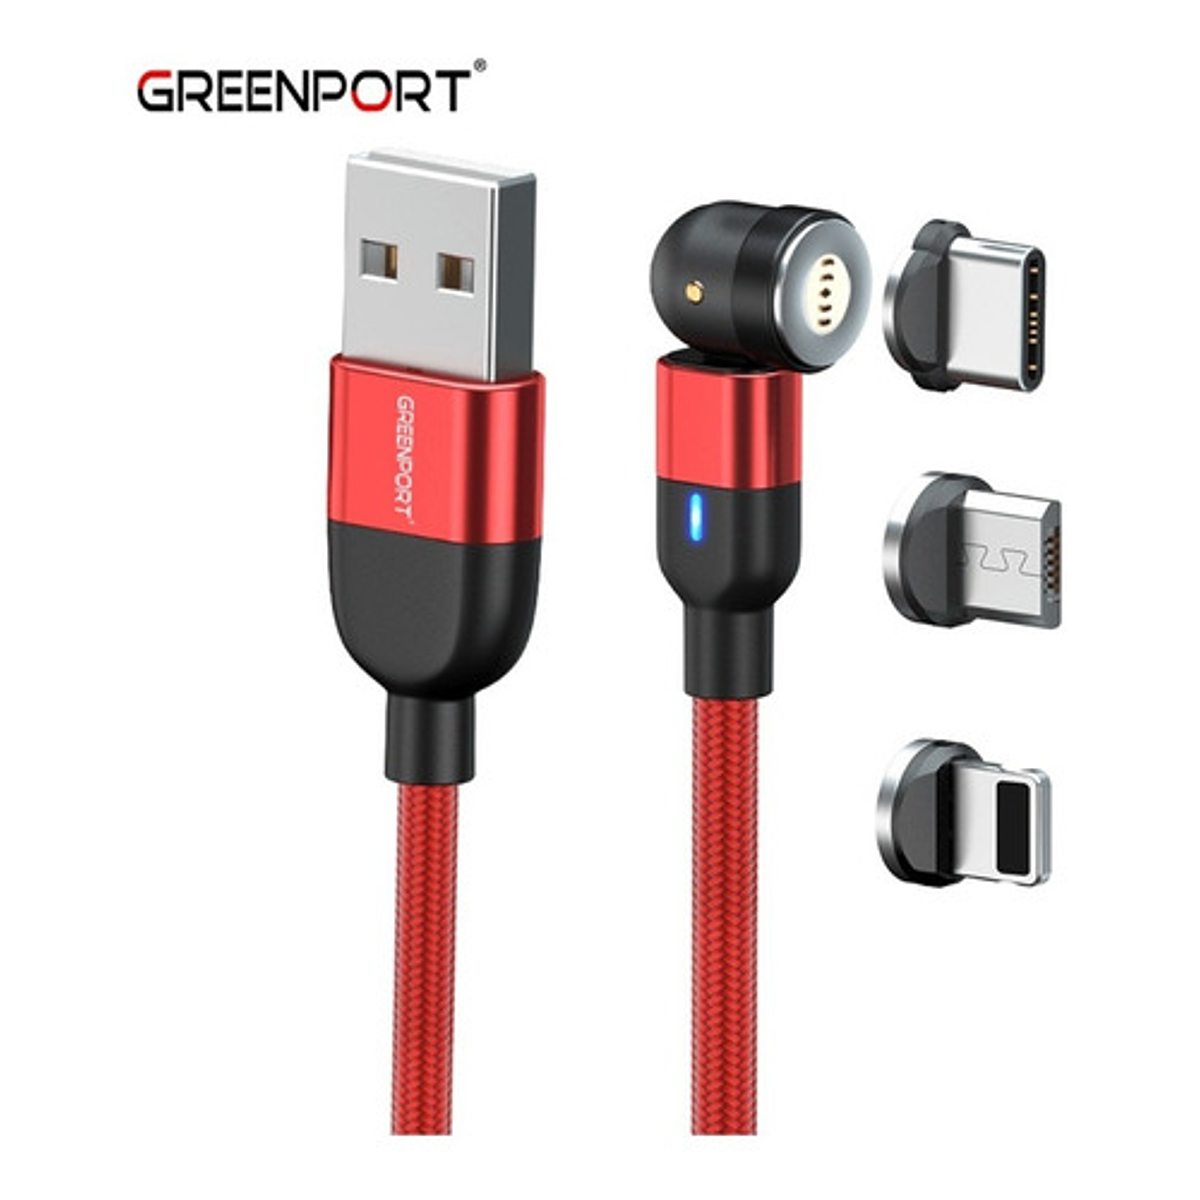  Cable de carga magnético giratorio de 540° (rojo, 4 unidades,  3/6/6 pies) 3 en 1 USB C cable de carga rápida de 2.4 A para iPhone,  Samsung Moto Android, Tablet TWS, auriculares, Gamepad : Electrónica